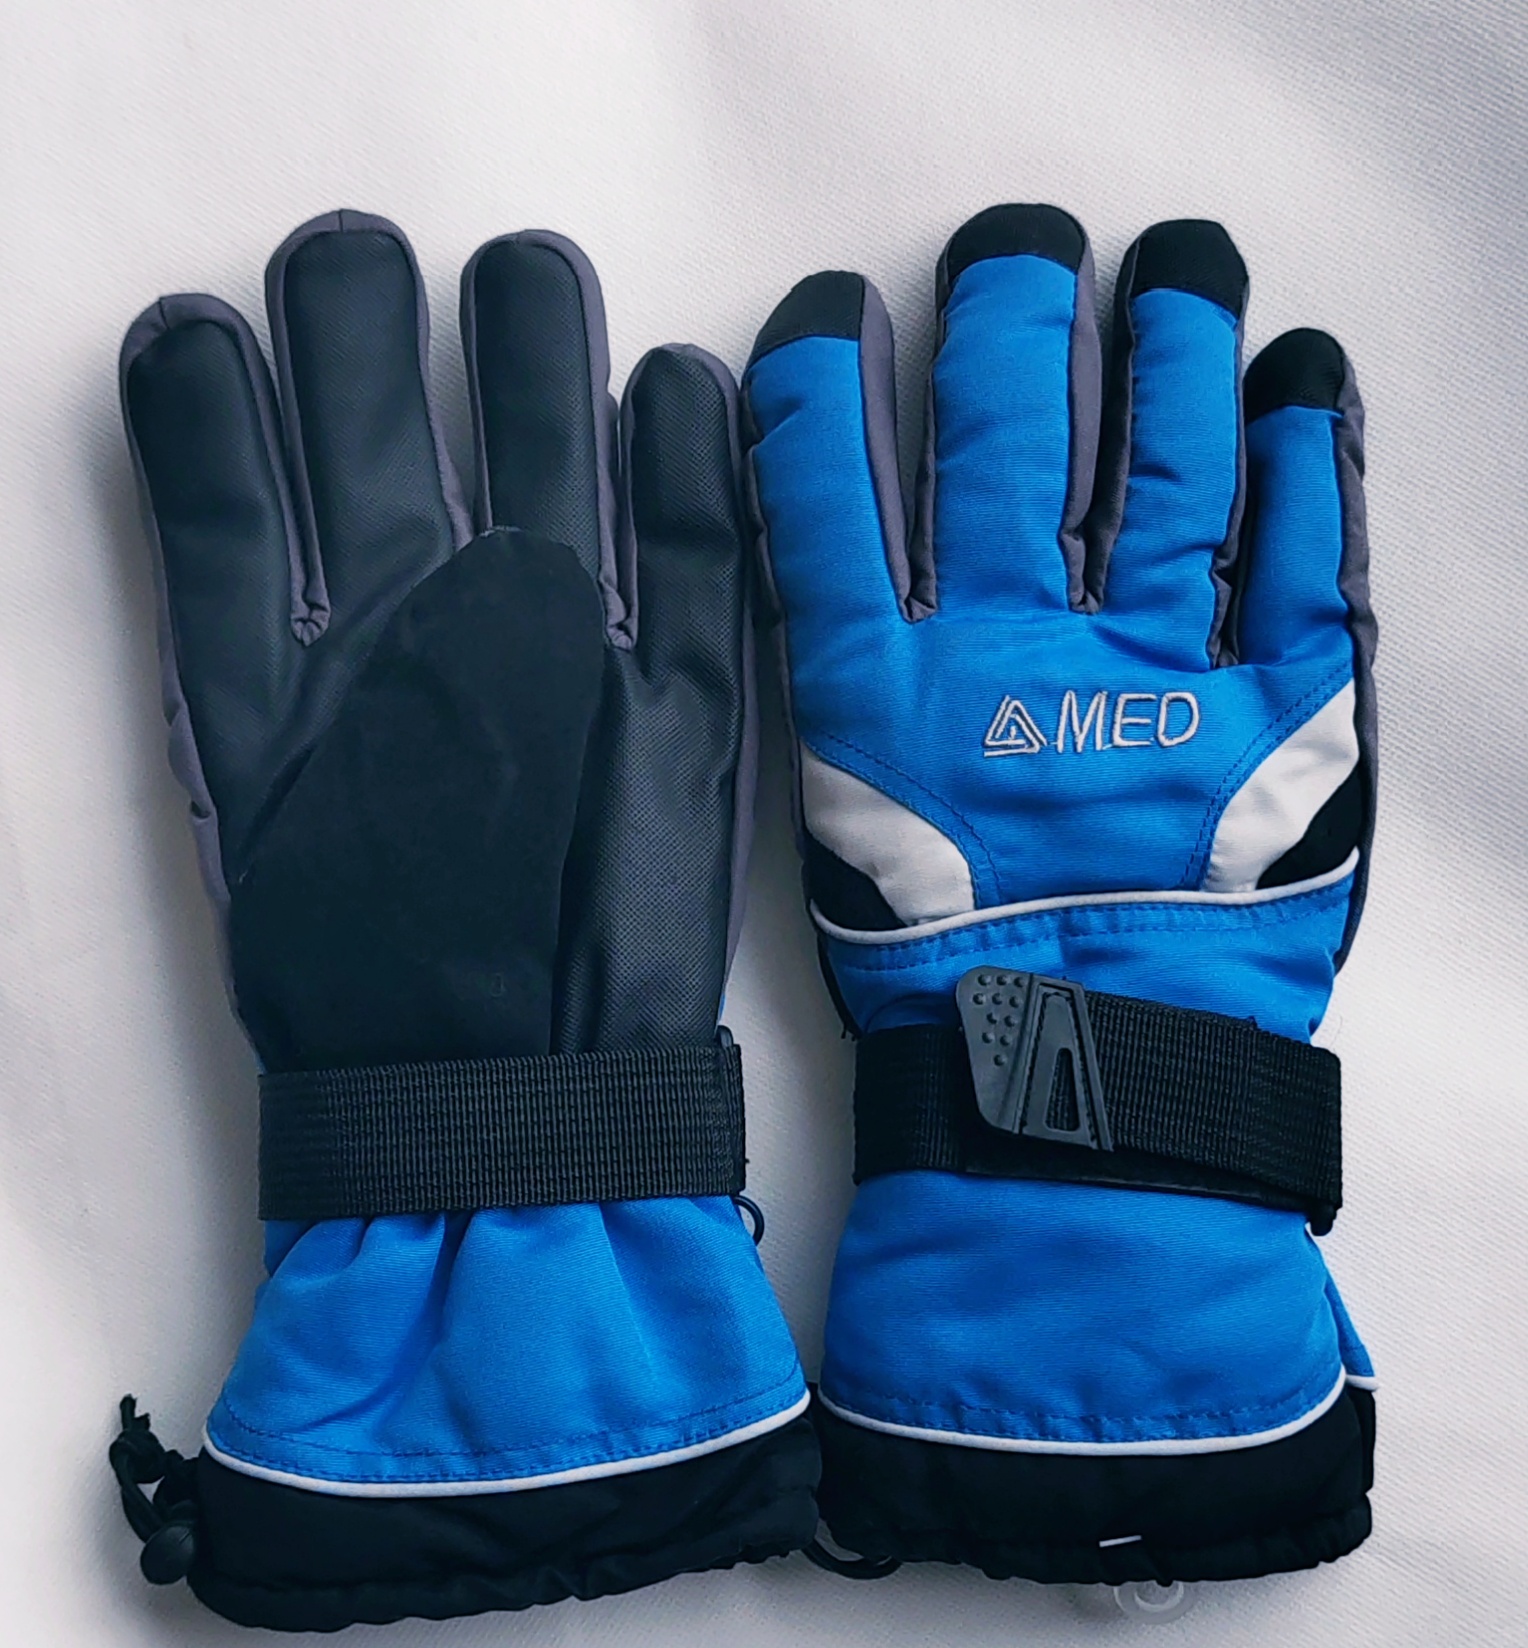 男士冬季运动户外滑雪手套 加厚抓绒触屏手套 骑行保暖防风防1